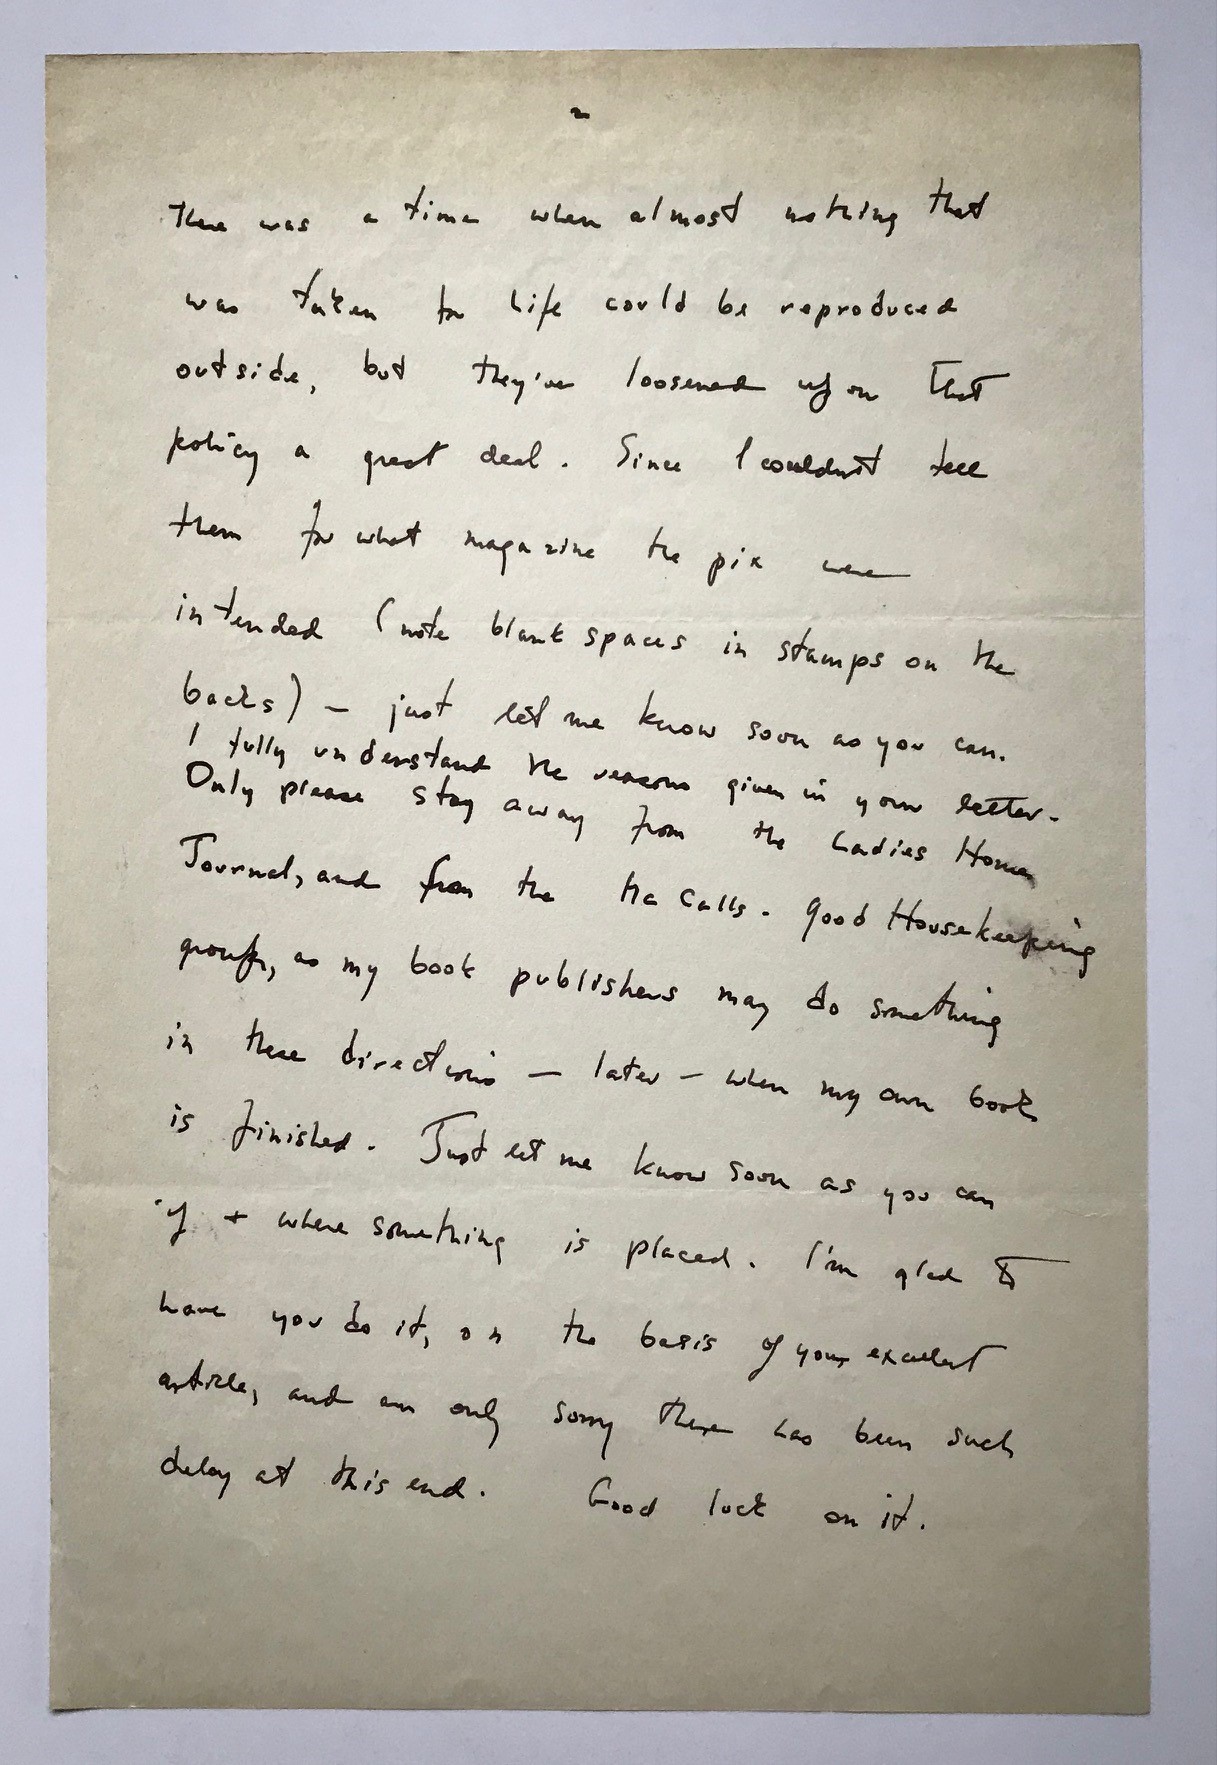 Margaret Bourke-White letter